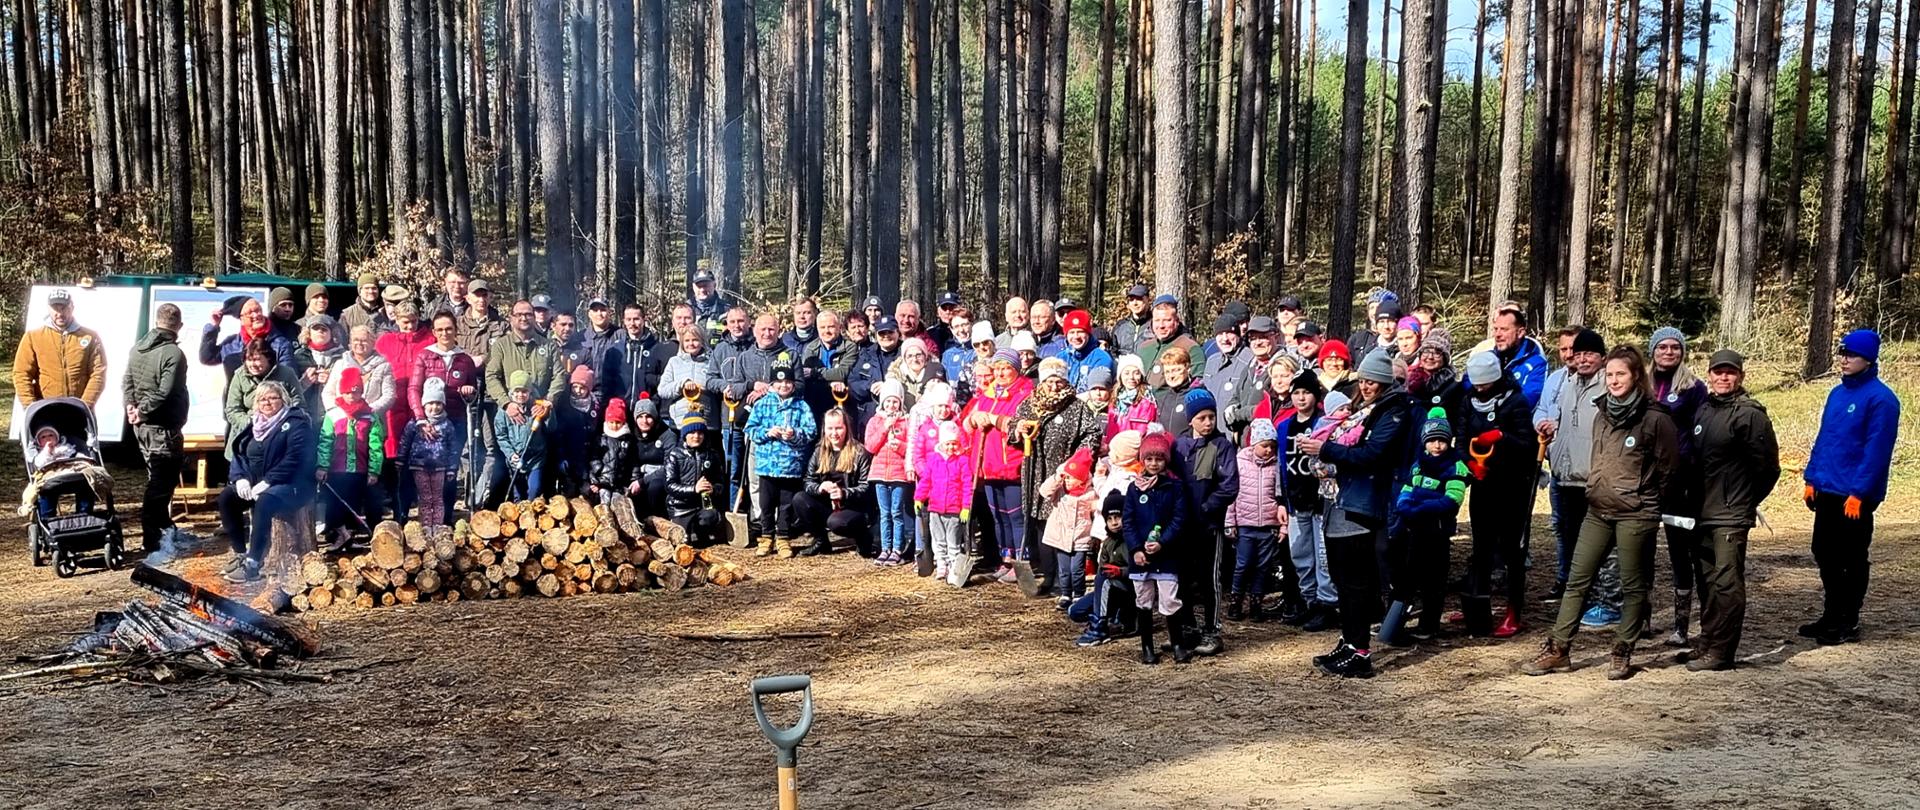 Zdjęcie przedstawia wszystkich uczestników akcji na tle lasu, widać dzieci i dorosłych, ognisko i drzewo do palenia.